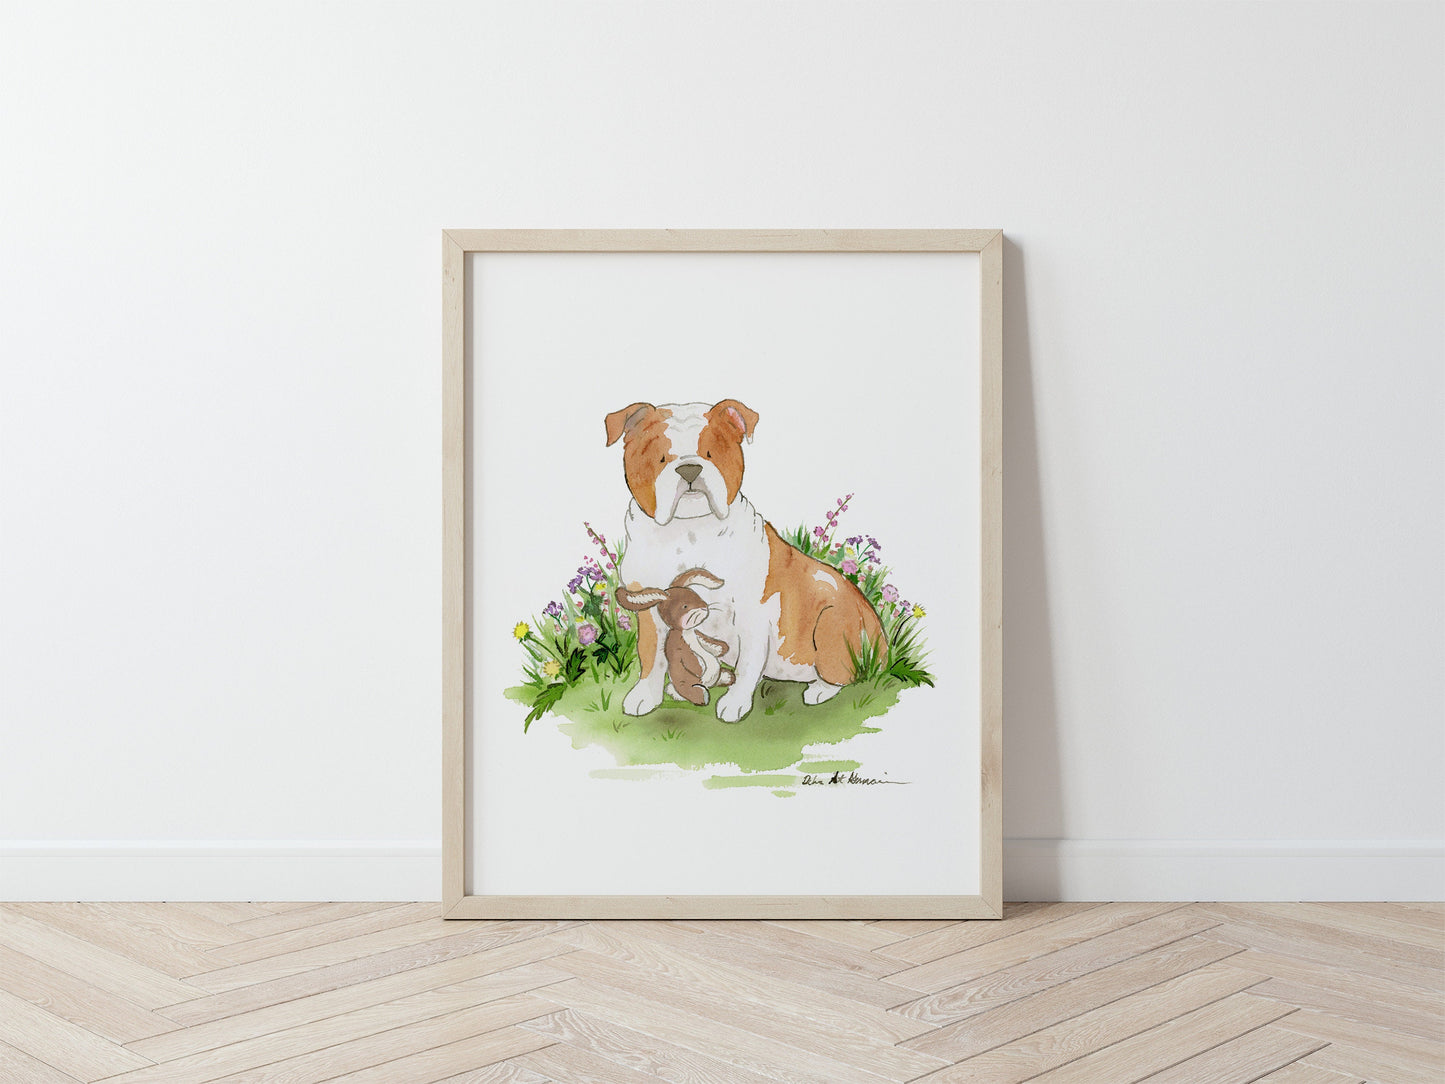 English Bulldog Watercolor Illustration Print, Bulldog with Bunny Art